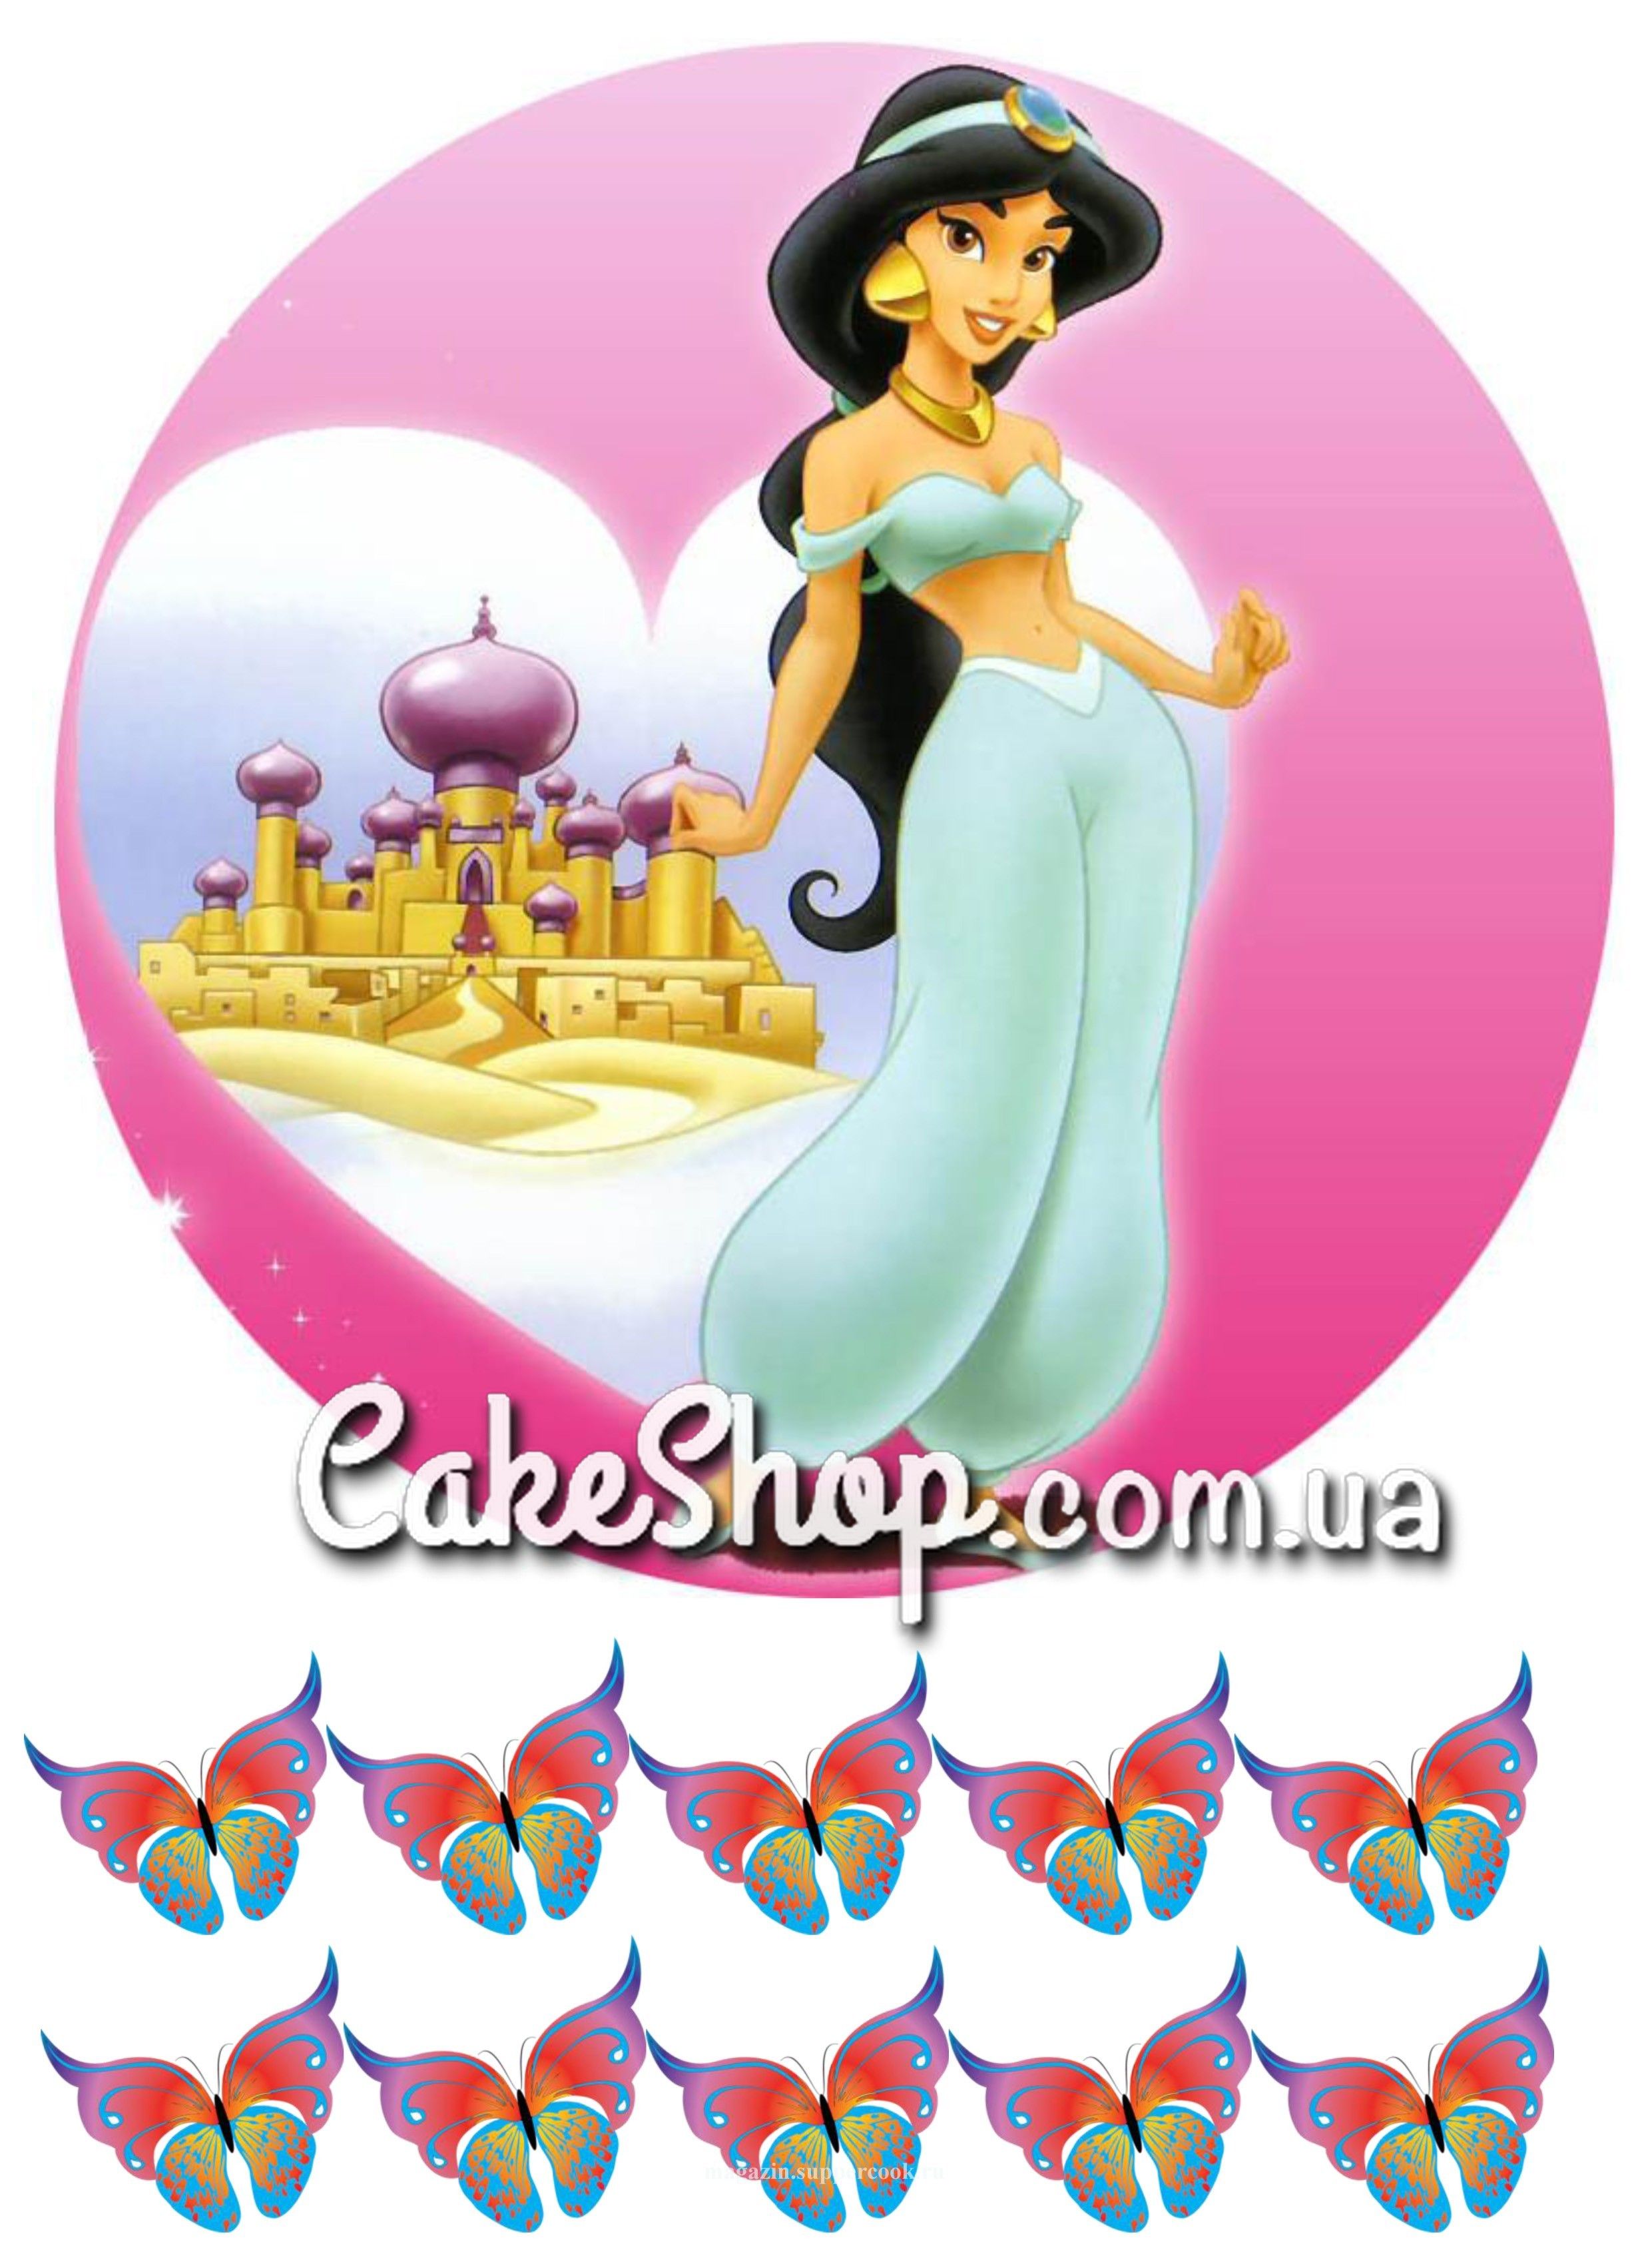 ⋗ Сахарная картинка Принцесса Жасмин купить в Украине ➛ CakeShop.com.ua, фото